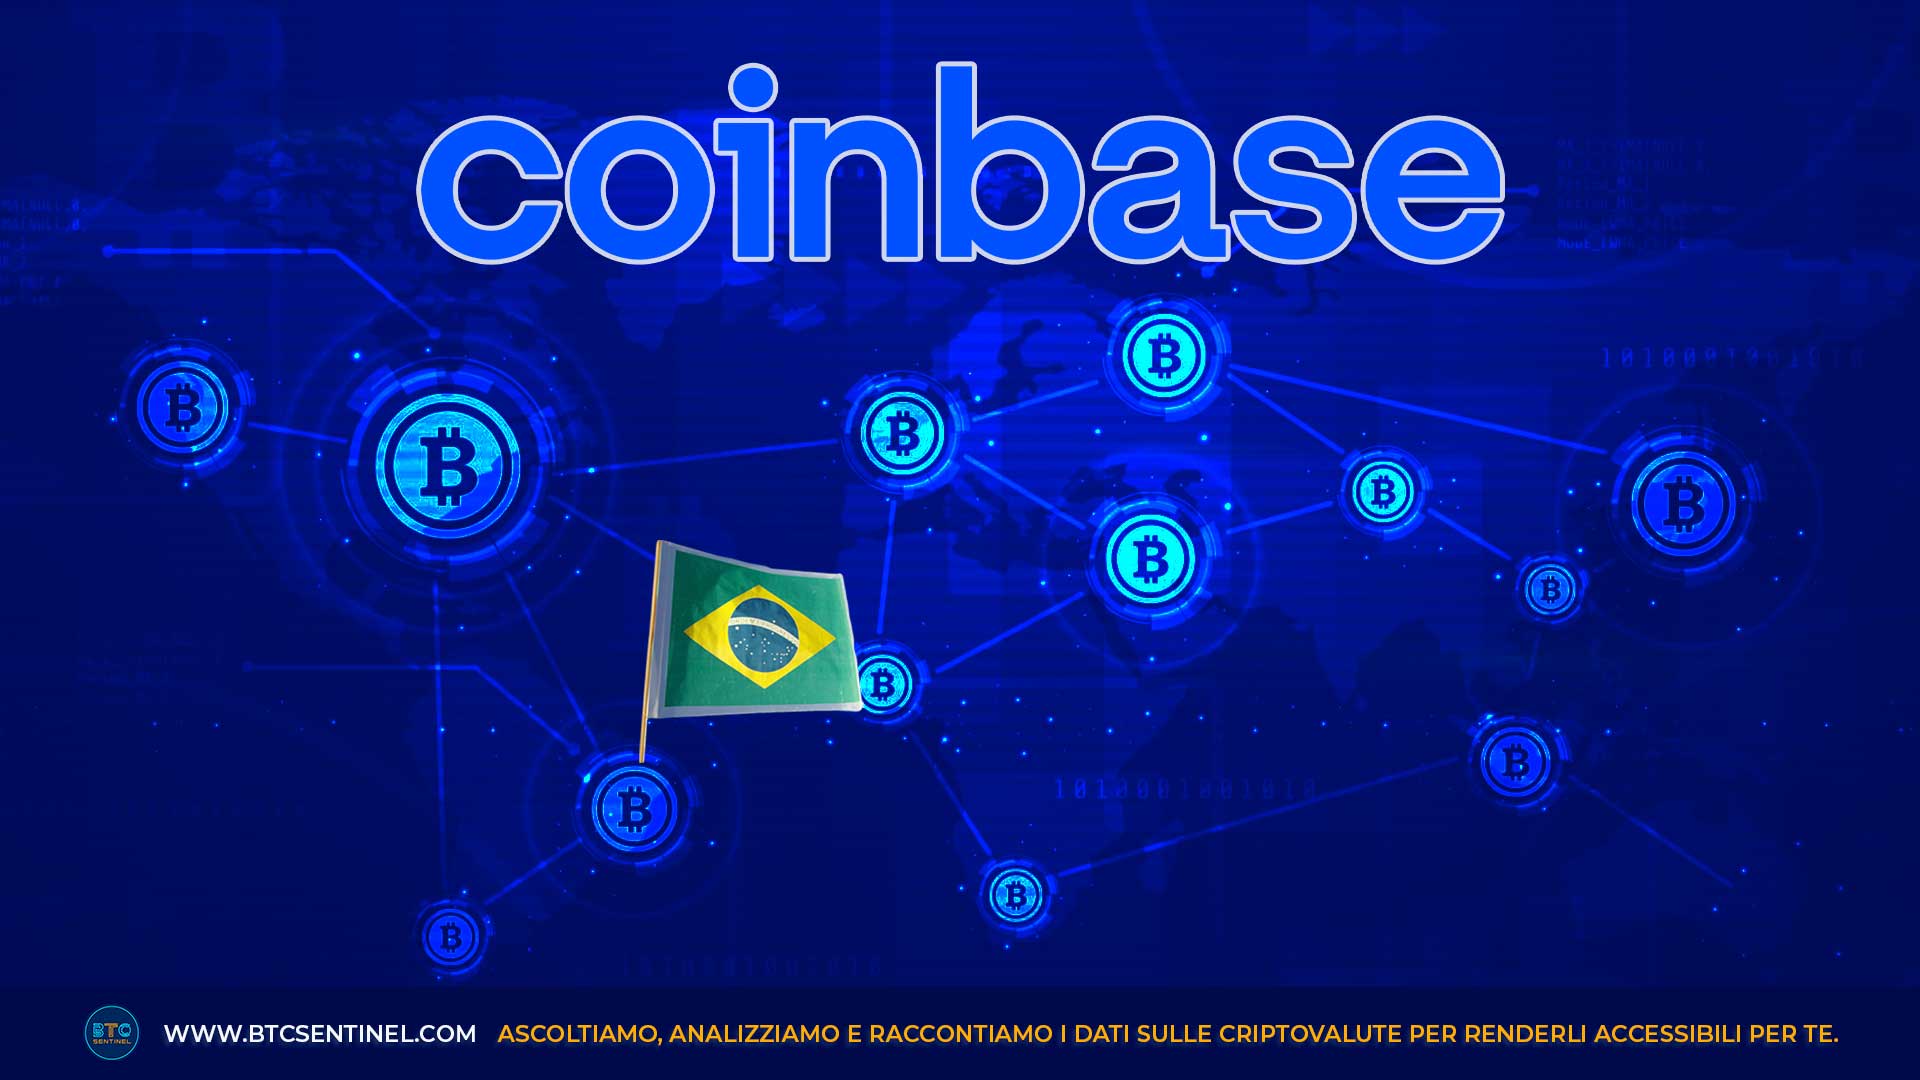 Coinbase sbarca in Brasile: dopo l'annuncio le azioni guadagnano il 12%